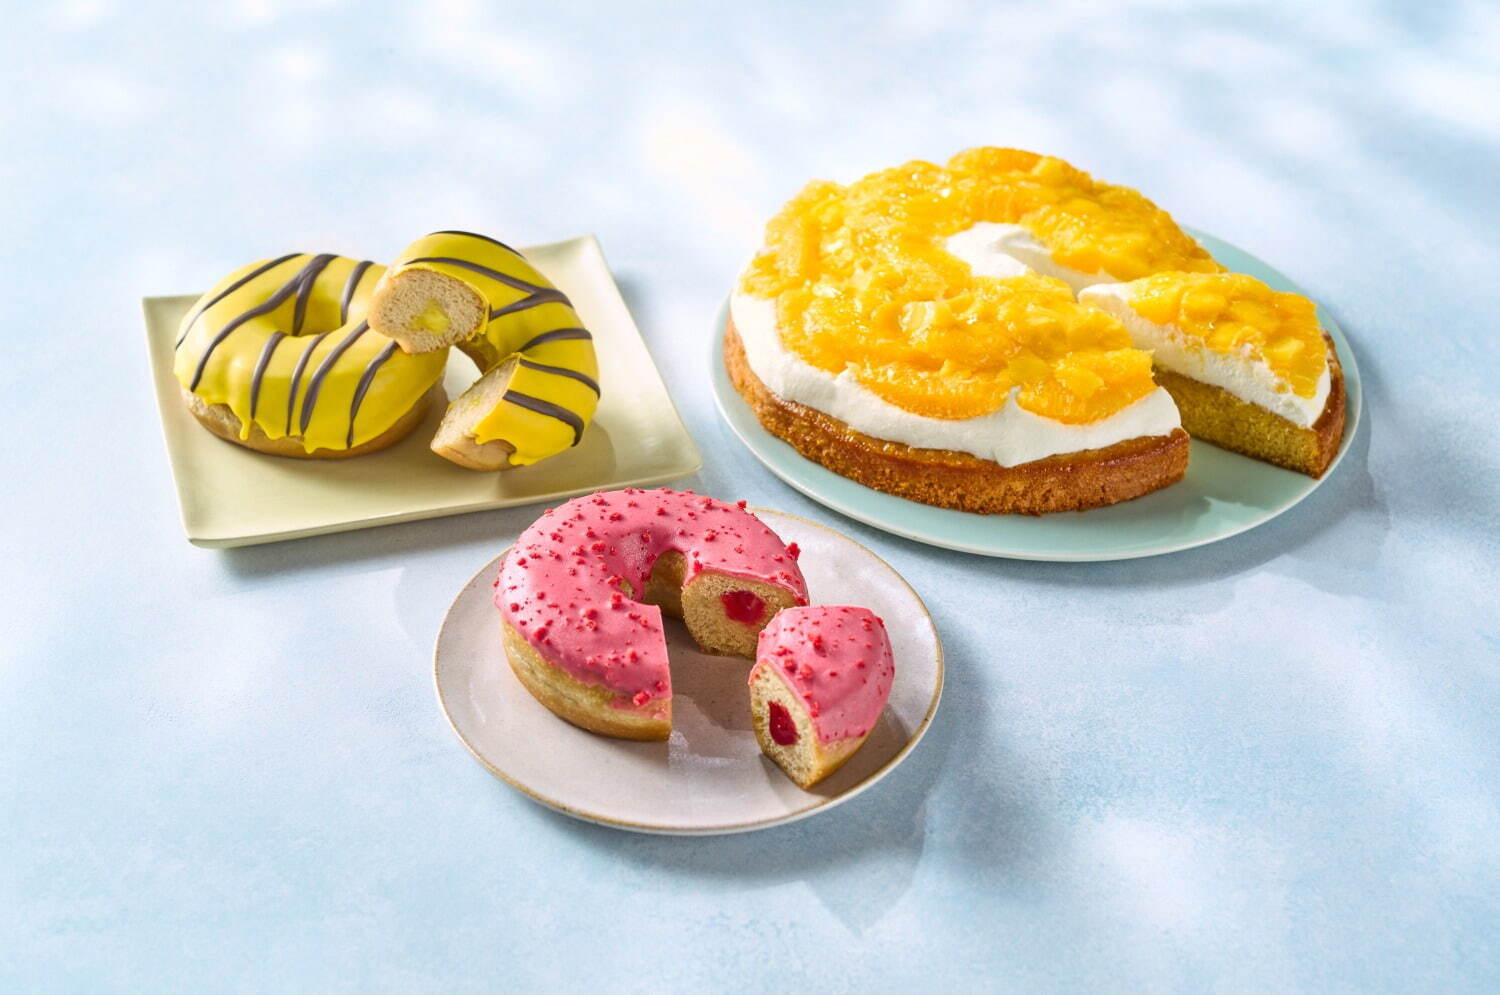 (左から)バナナクリームドーナツ 285円、ストロベリードーナツ 285円、オレンジ＆マンゴーのケーキ 516円※全てテイクアウト価格